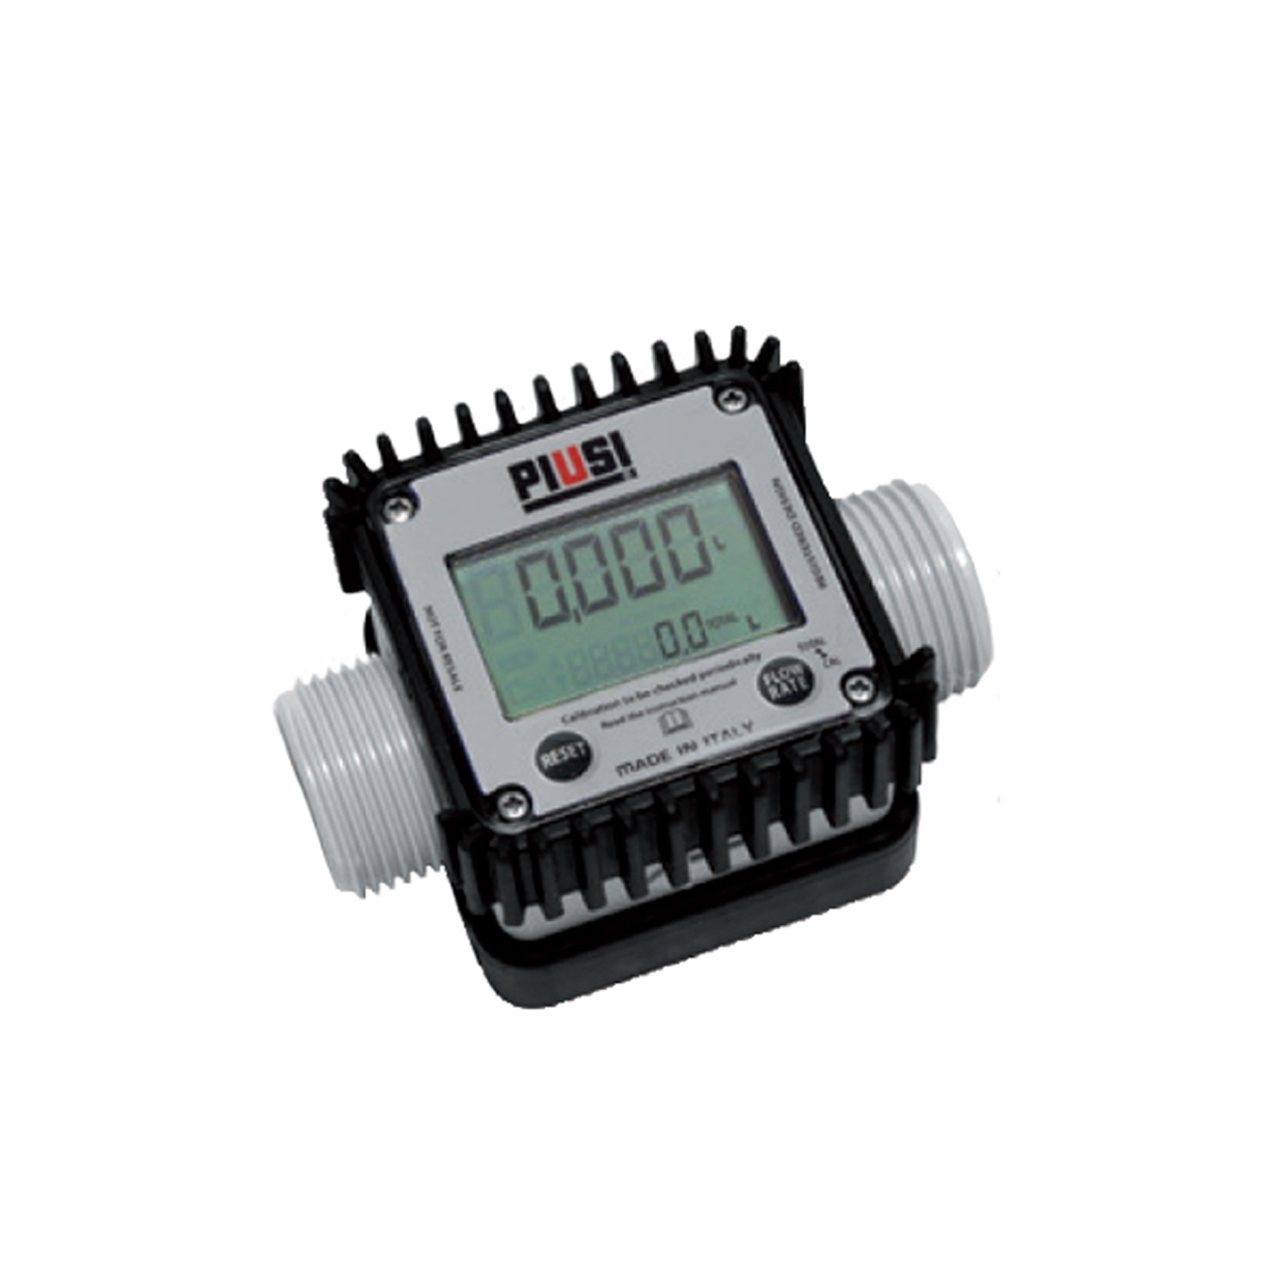 Details about   K24 Digital Flowmeter For Fuel Pro K24 Digital Flowmeter For Fuel For Chemicals 